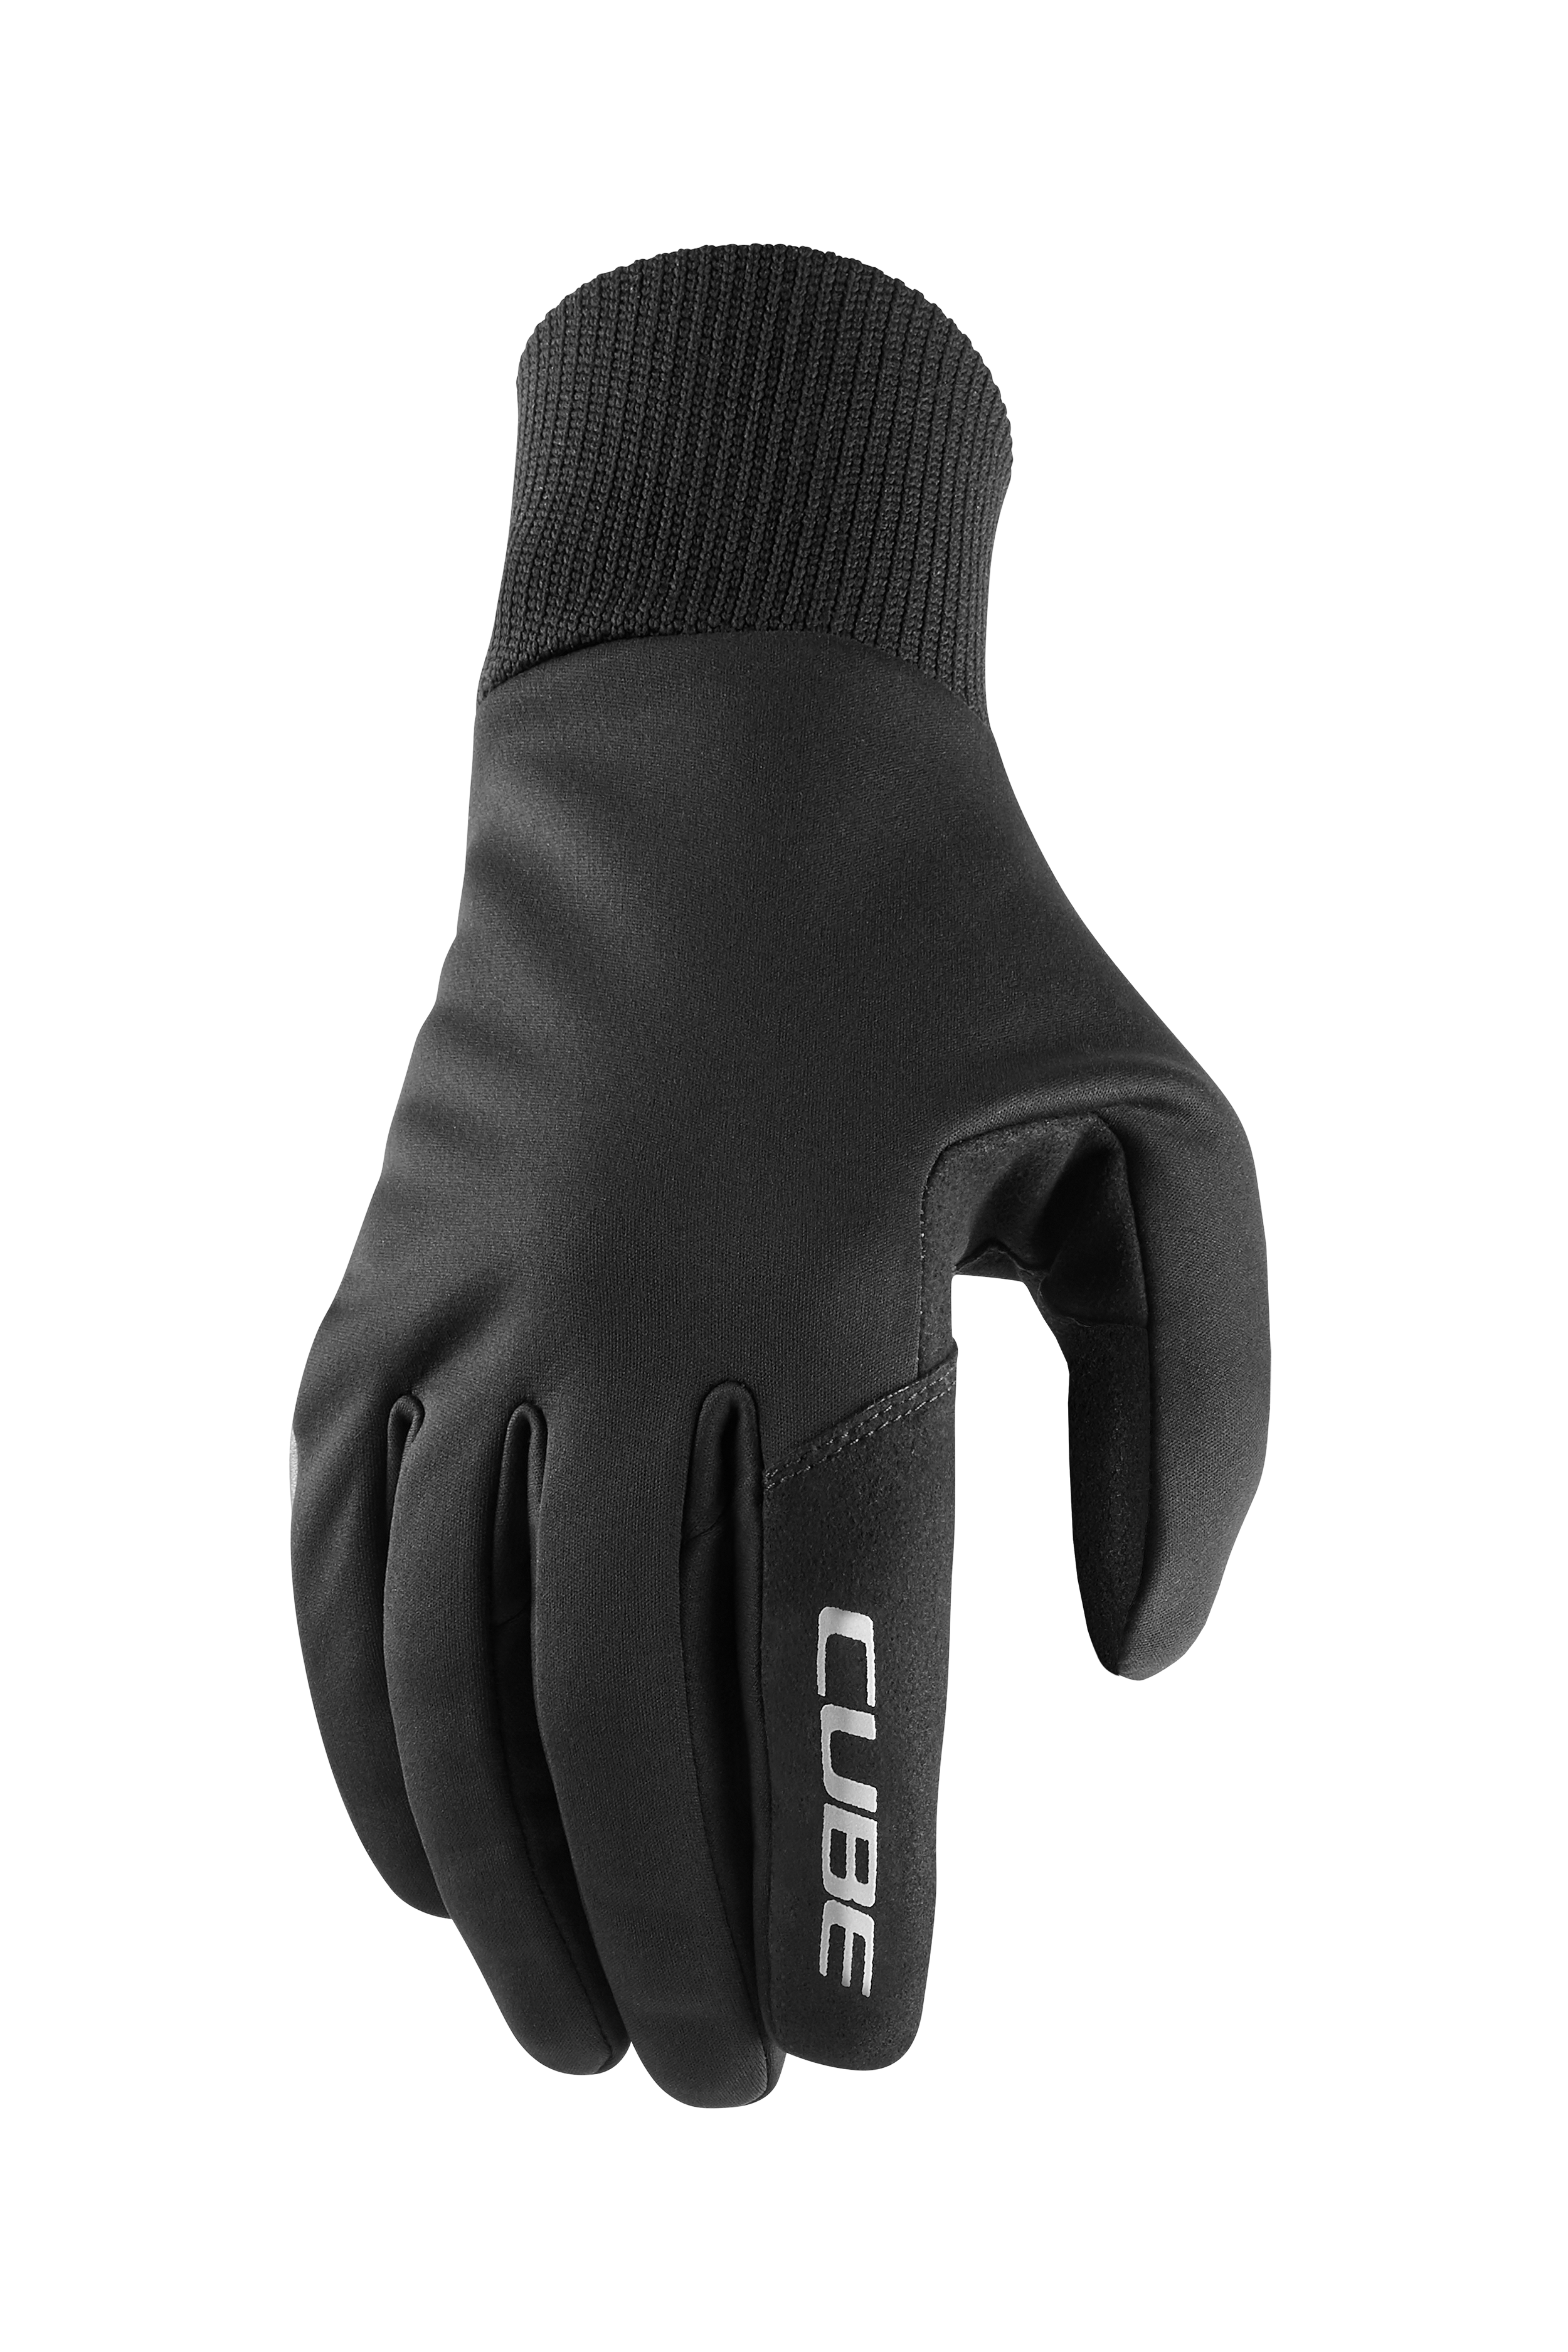 CUBE Gloves Performance All Season long finger